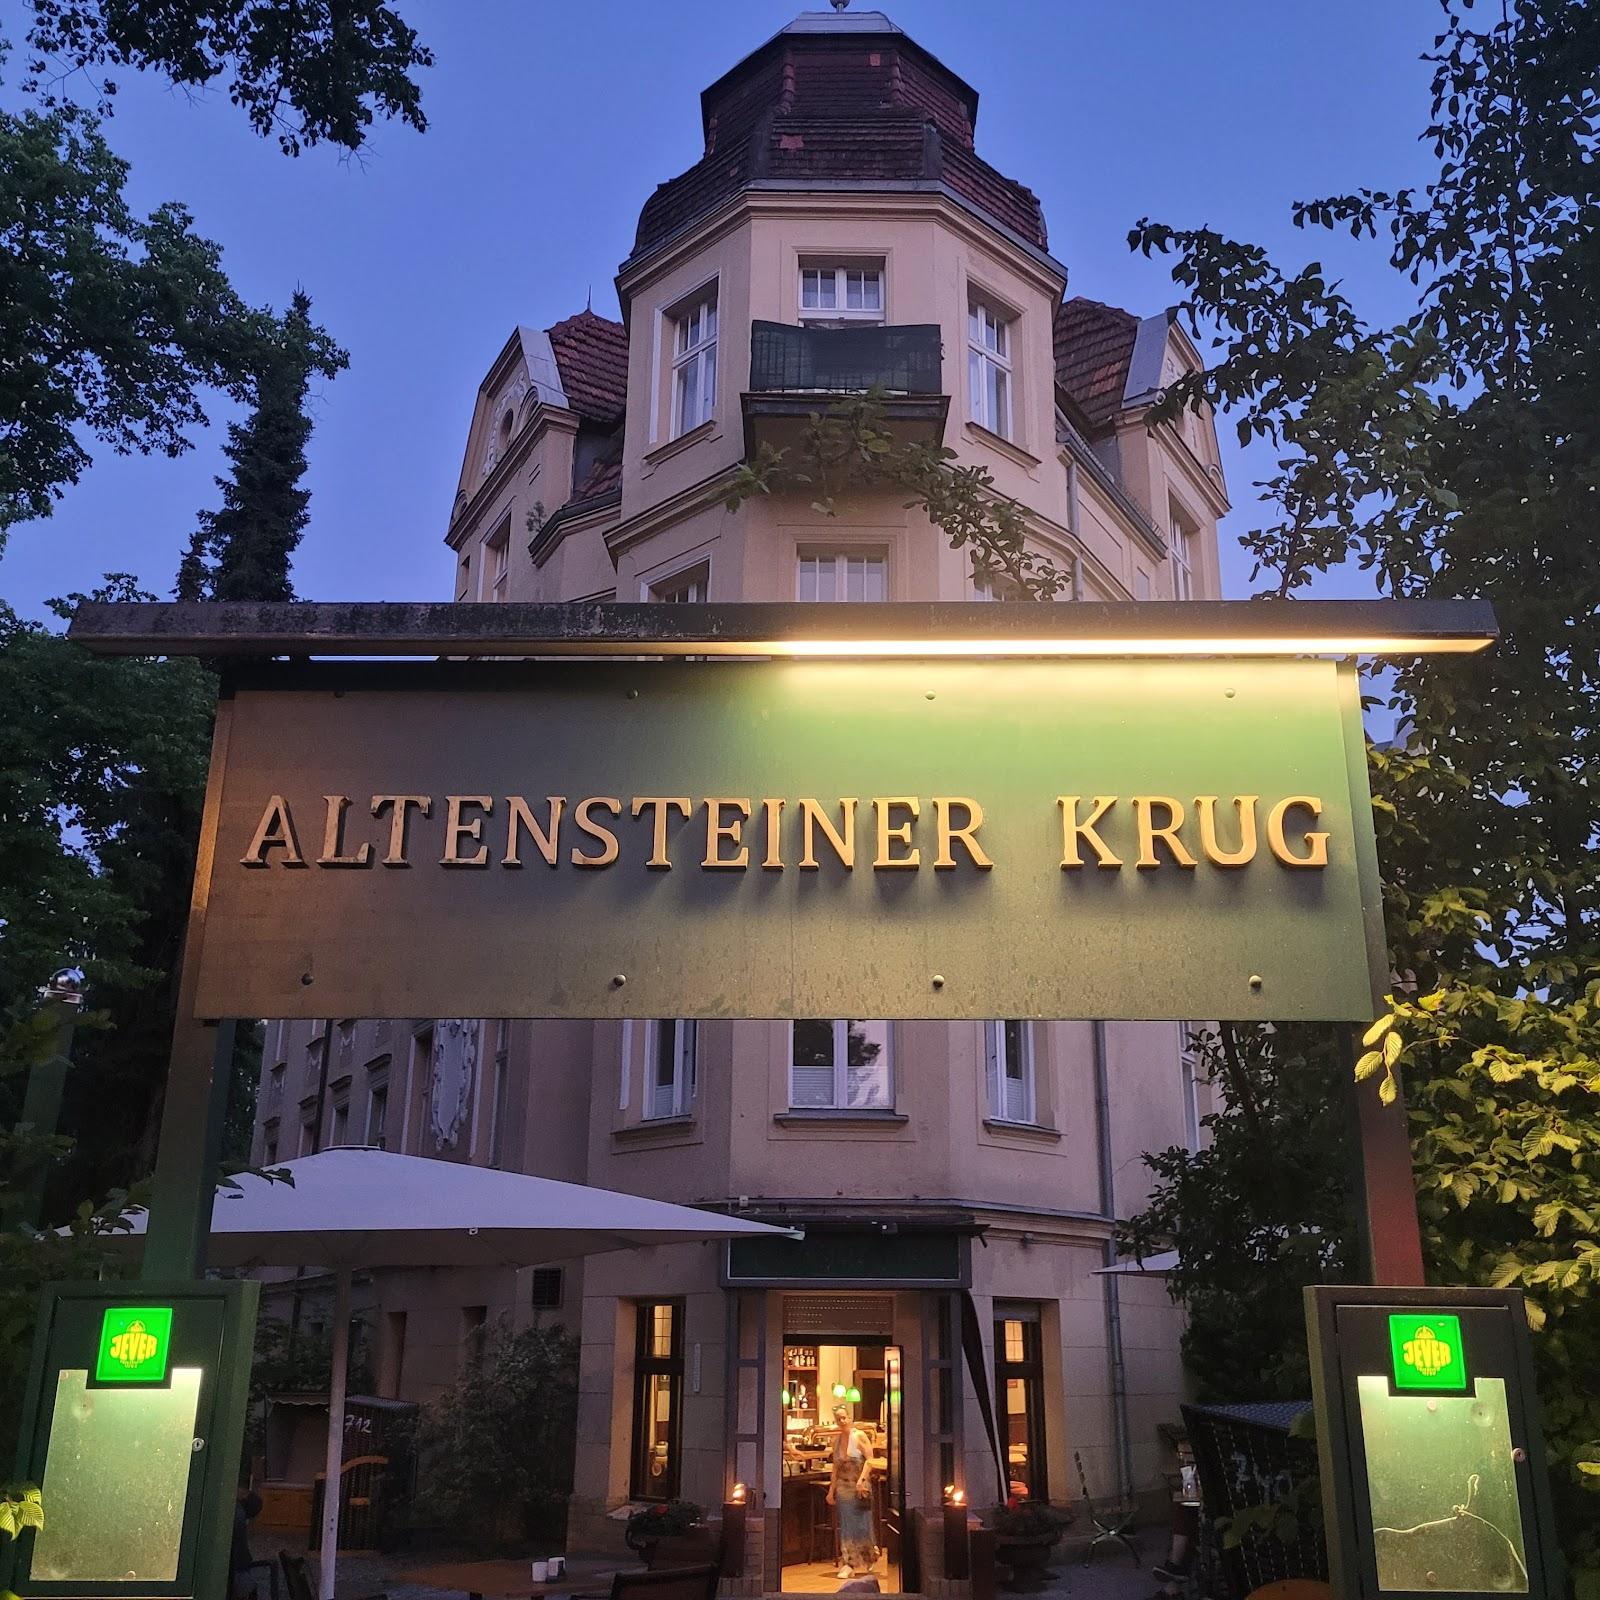 Restaurant "Altensteiner Krug" in Berlin